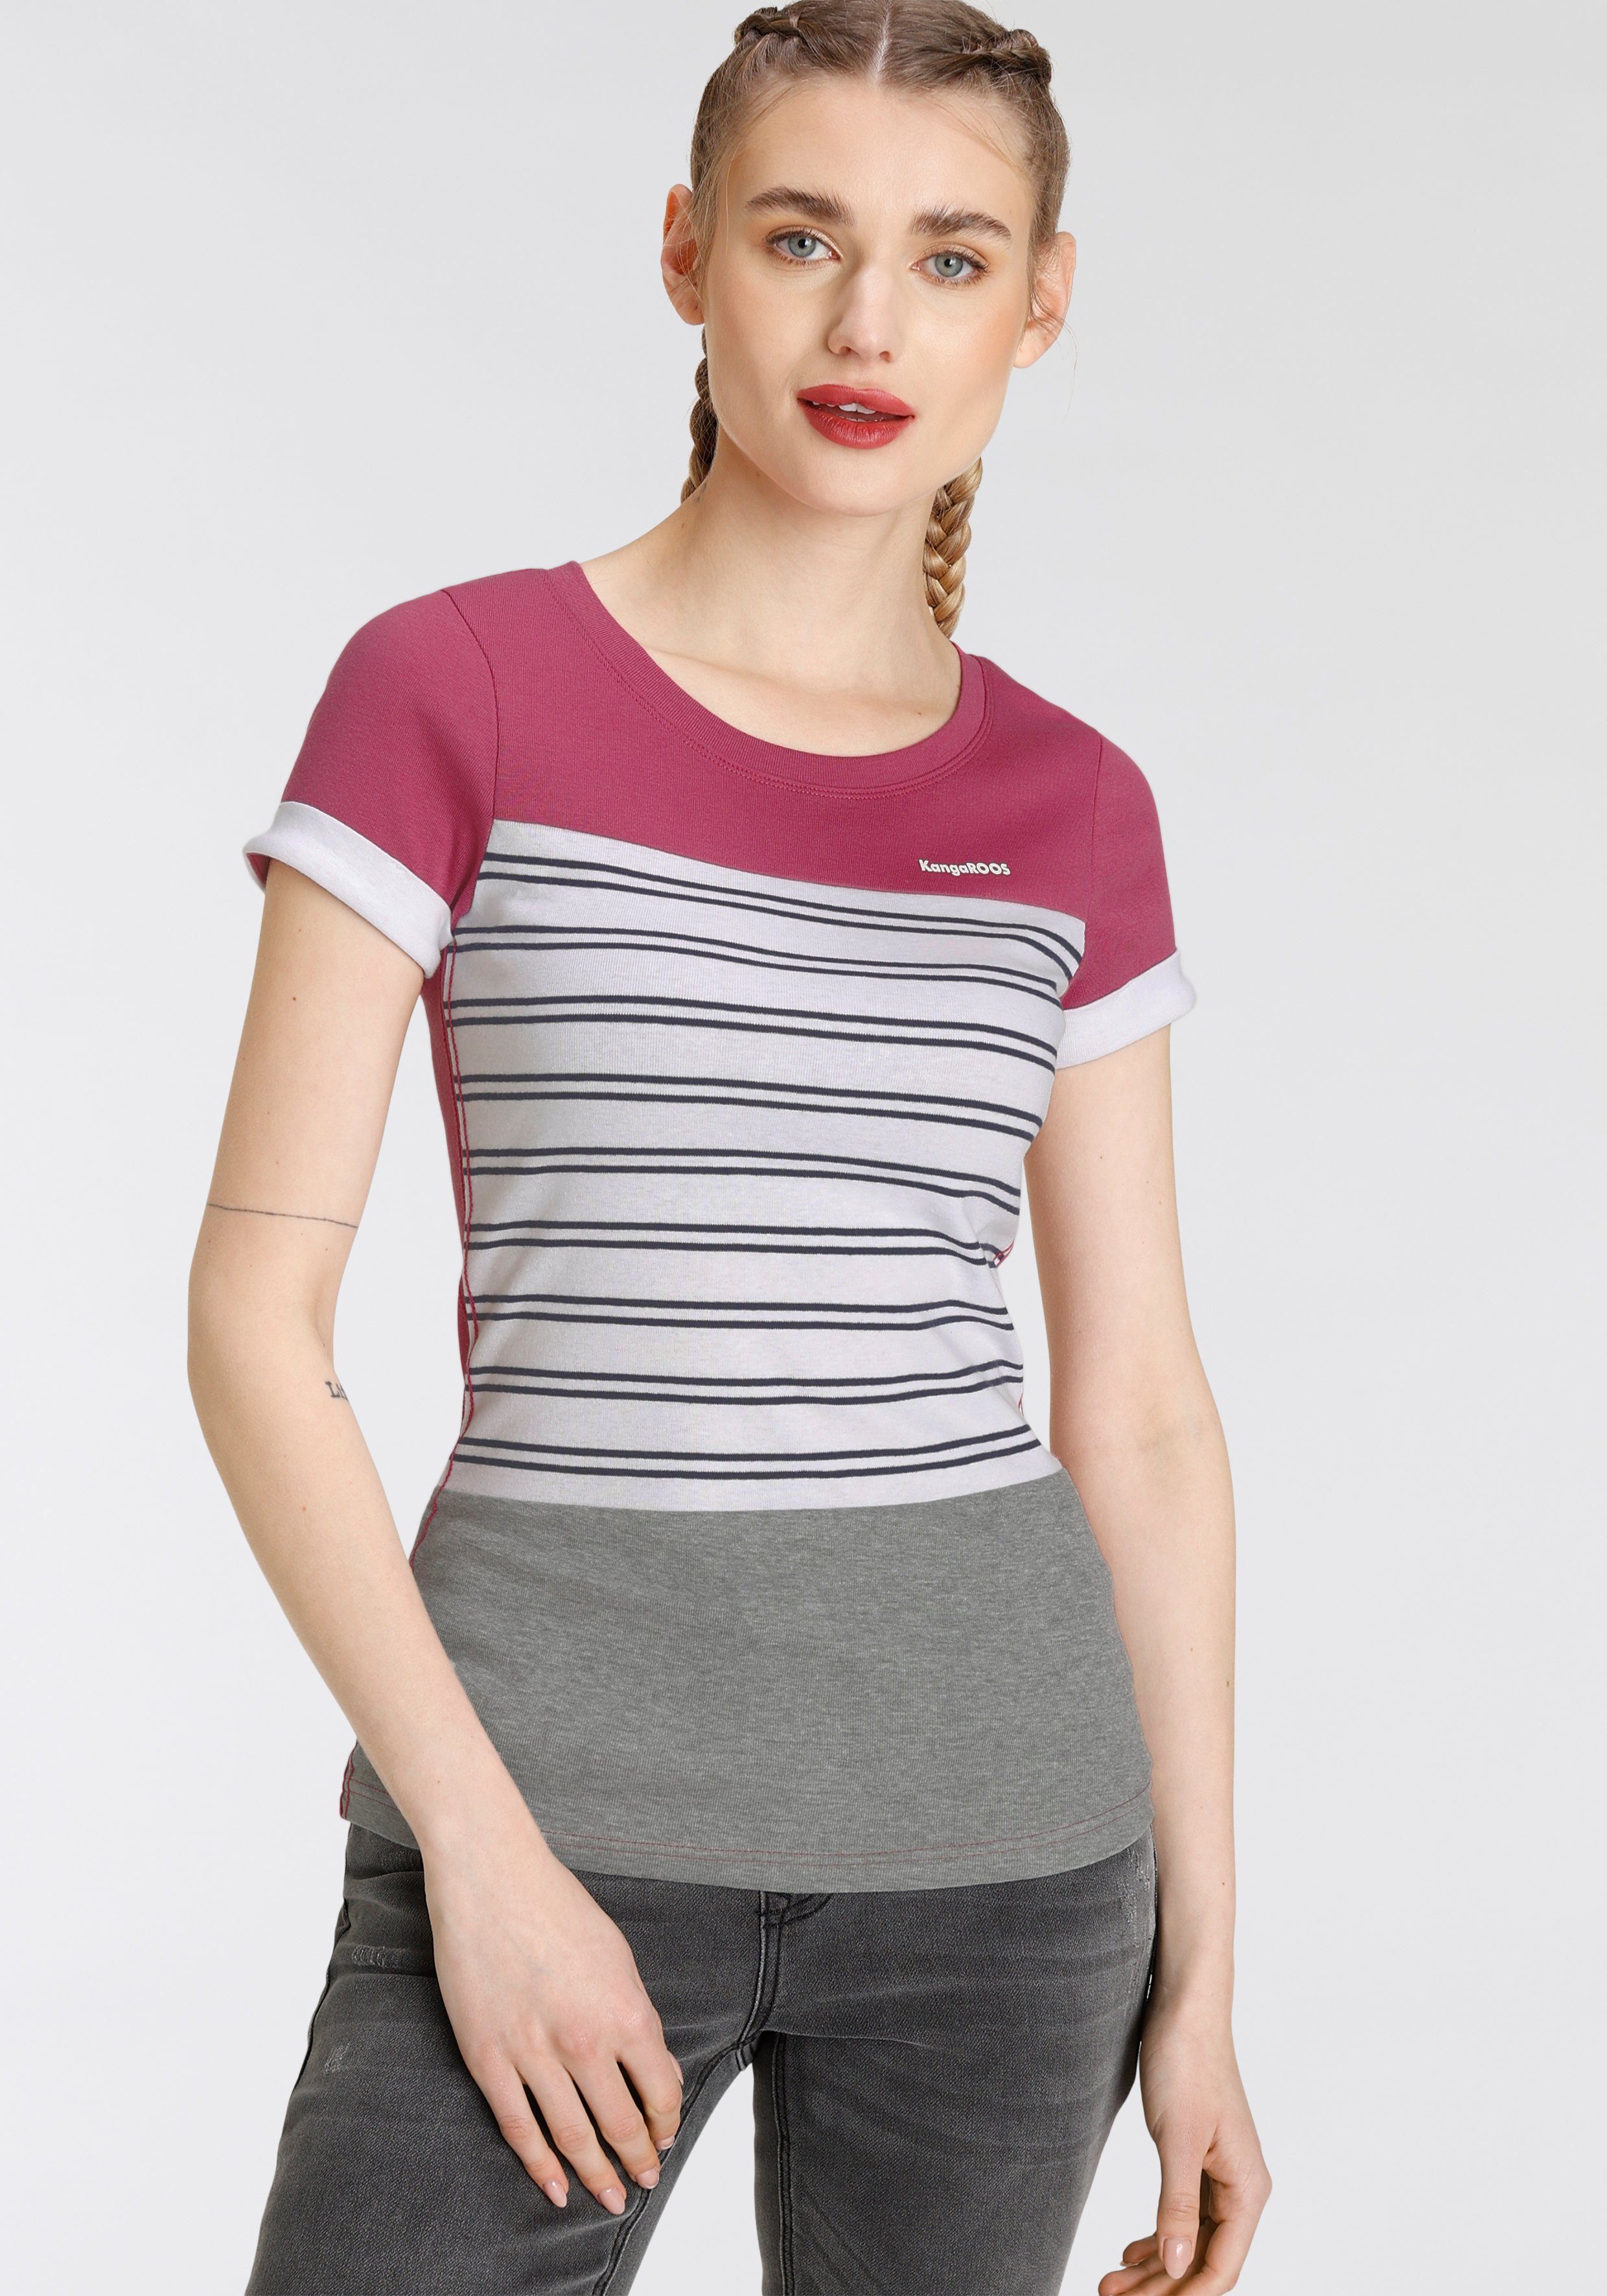 KangaROOS T-Shirt Colorblocking-Mix NEUE im trendigen Streifen - & KOLLEKTION